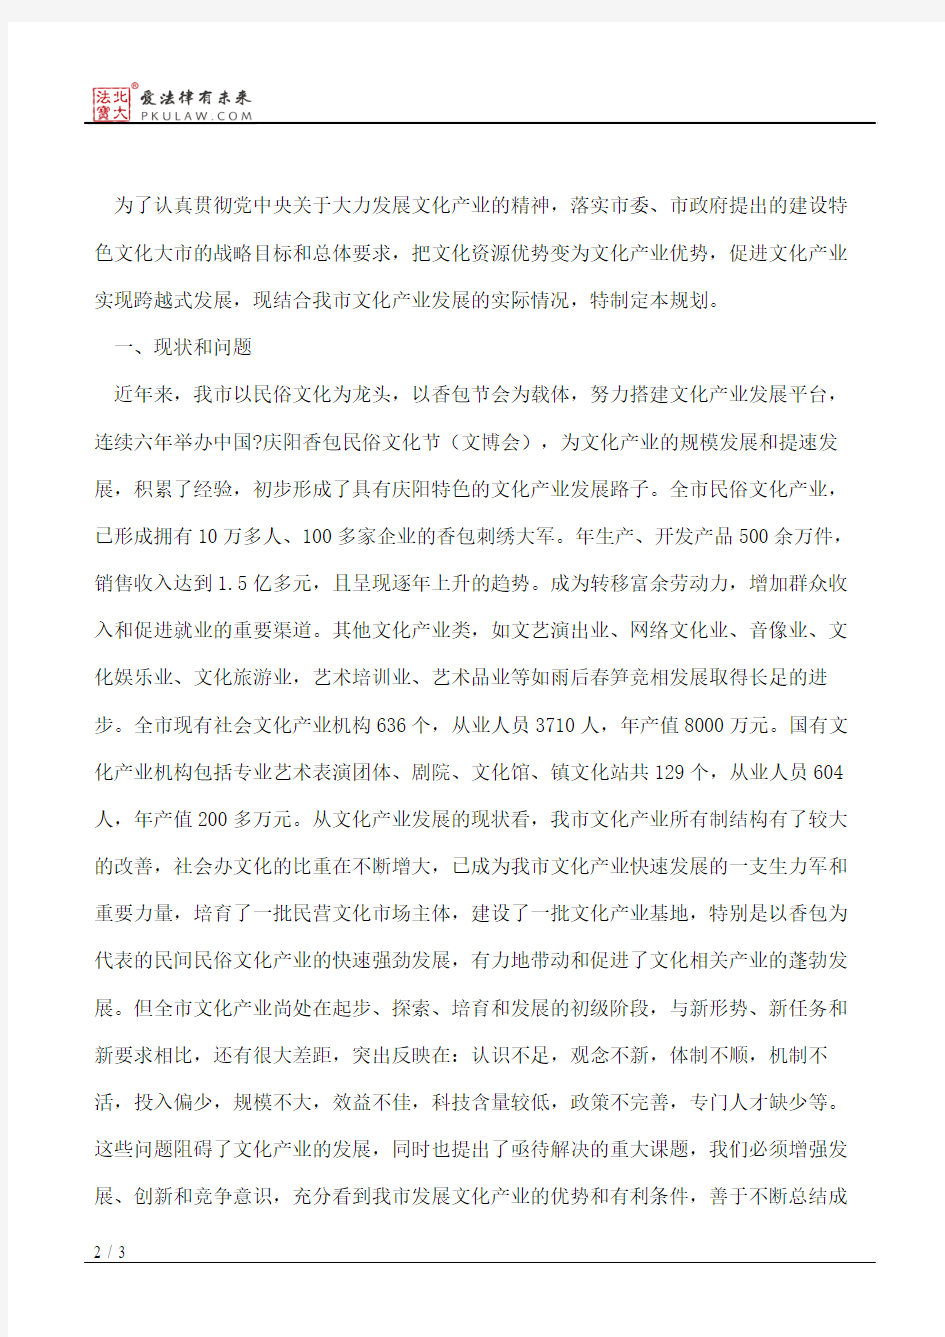 庆阳市人民政府办公室关于印发《庆阳市文化产业发展规划》的通知